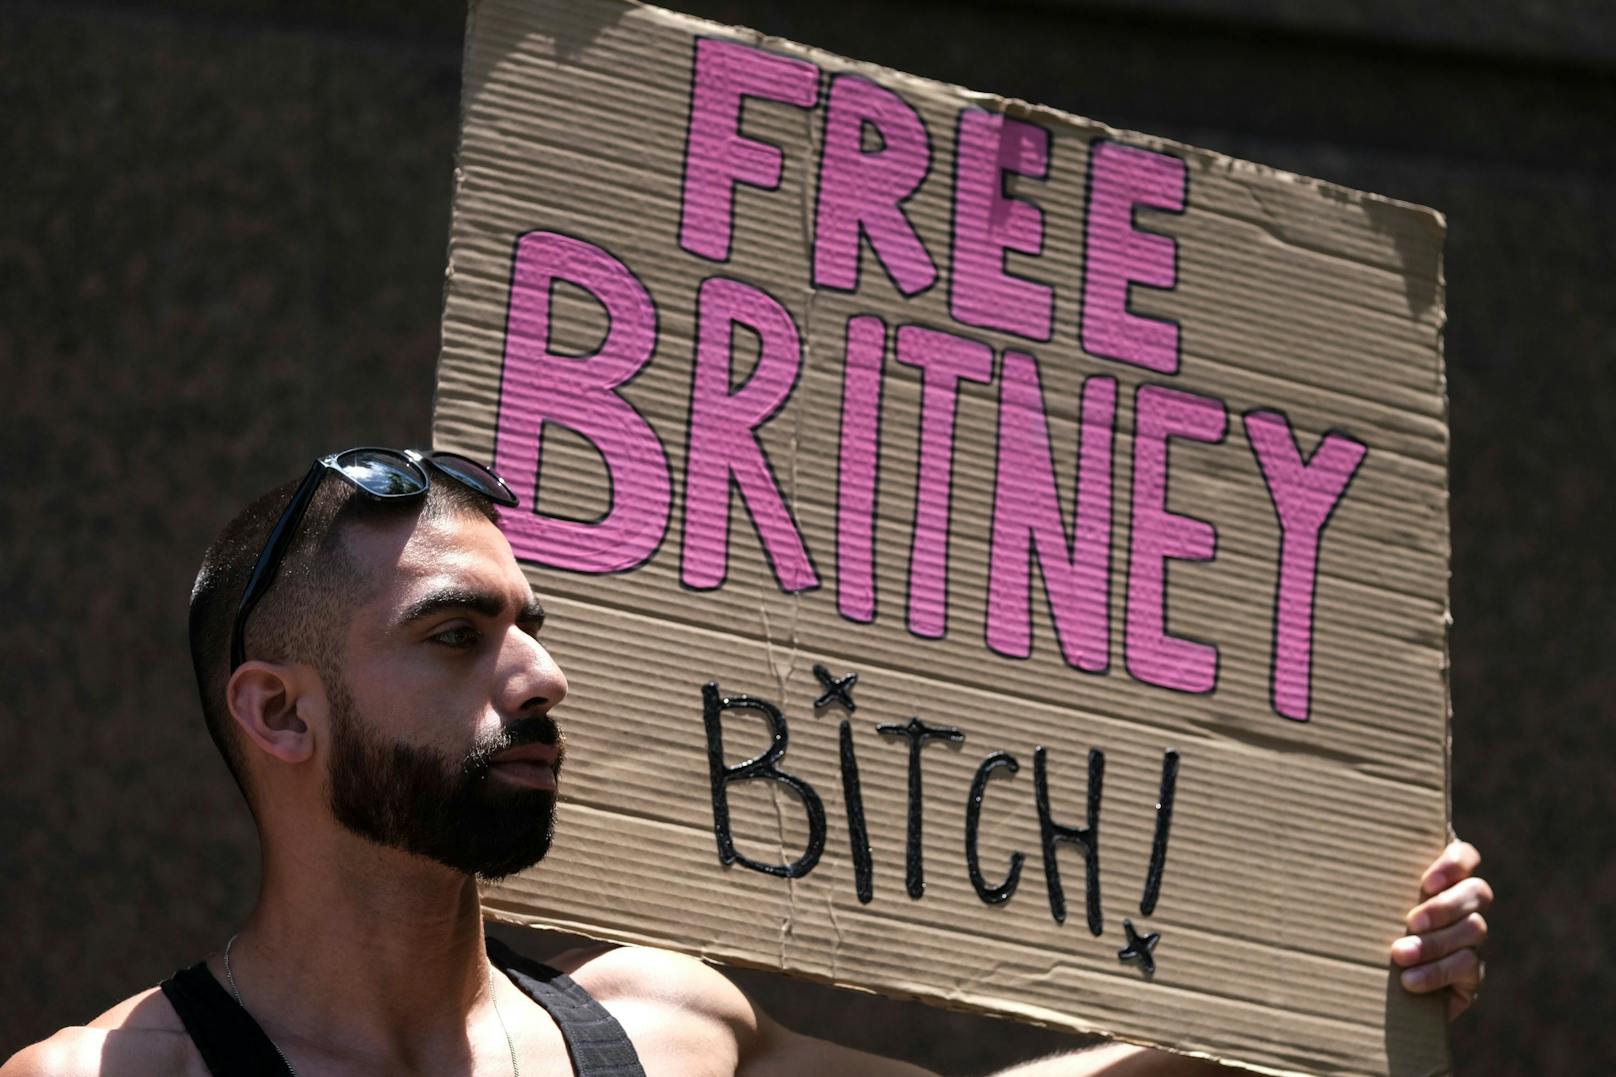 Free Britney Spears, Vor dem Gerichtsaal in Los Angeles kämpfen Britneys Fans für das Ende ihrer Vormundschaft.